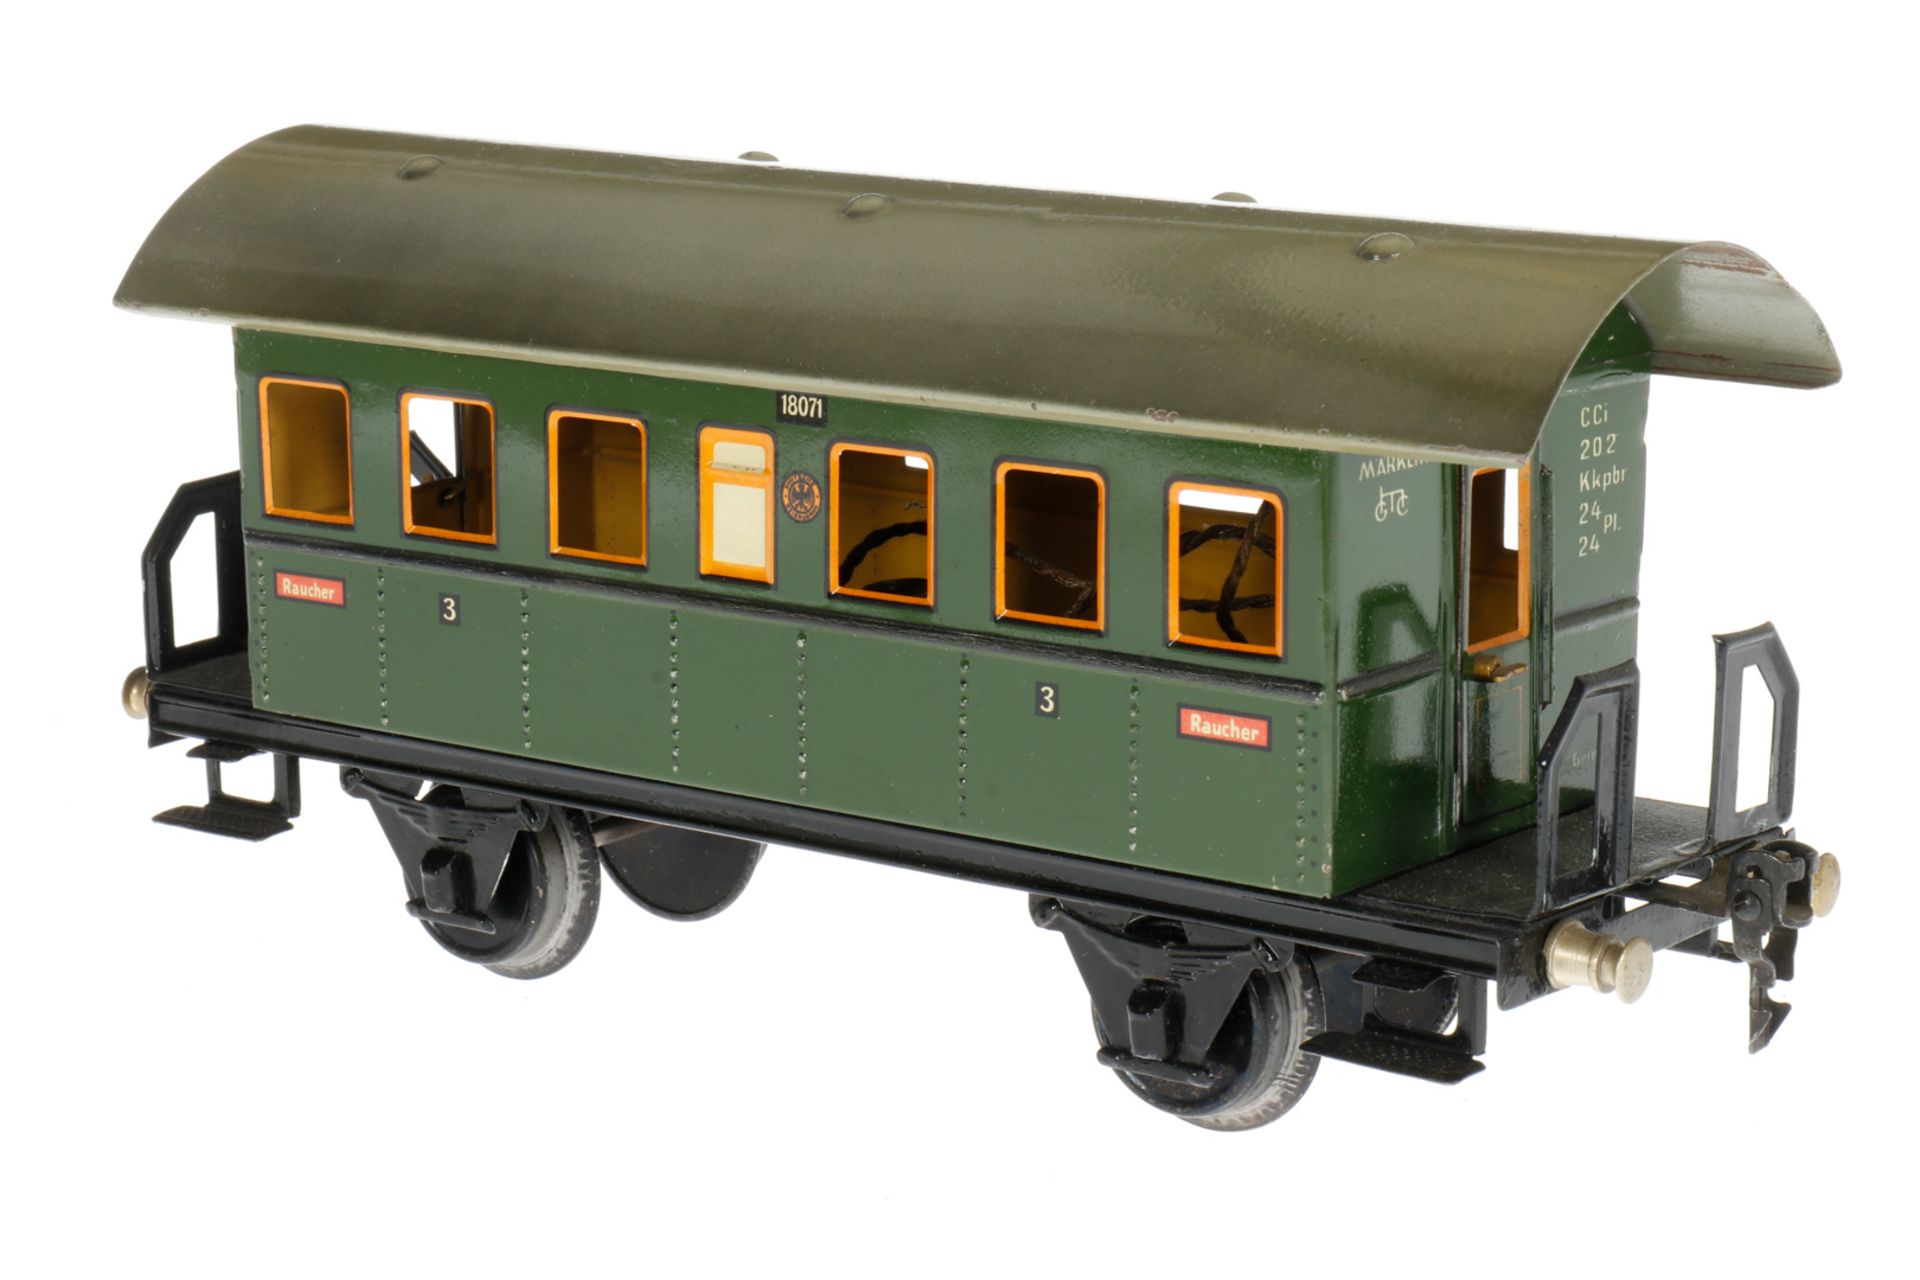 Märklin Personenwagen 1807, S 1, CL, mit 2 AT, LS an Rahmenbereichen ausgeb., gealterter Lack, L 27, - Bild 3 aus 5